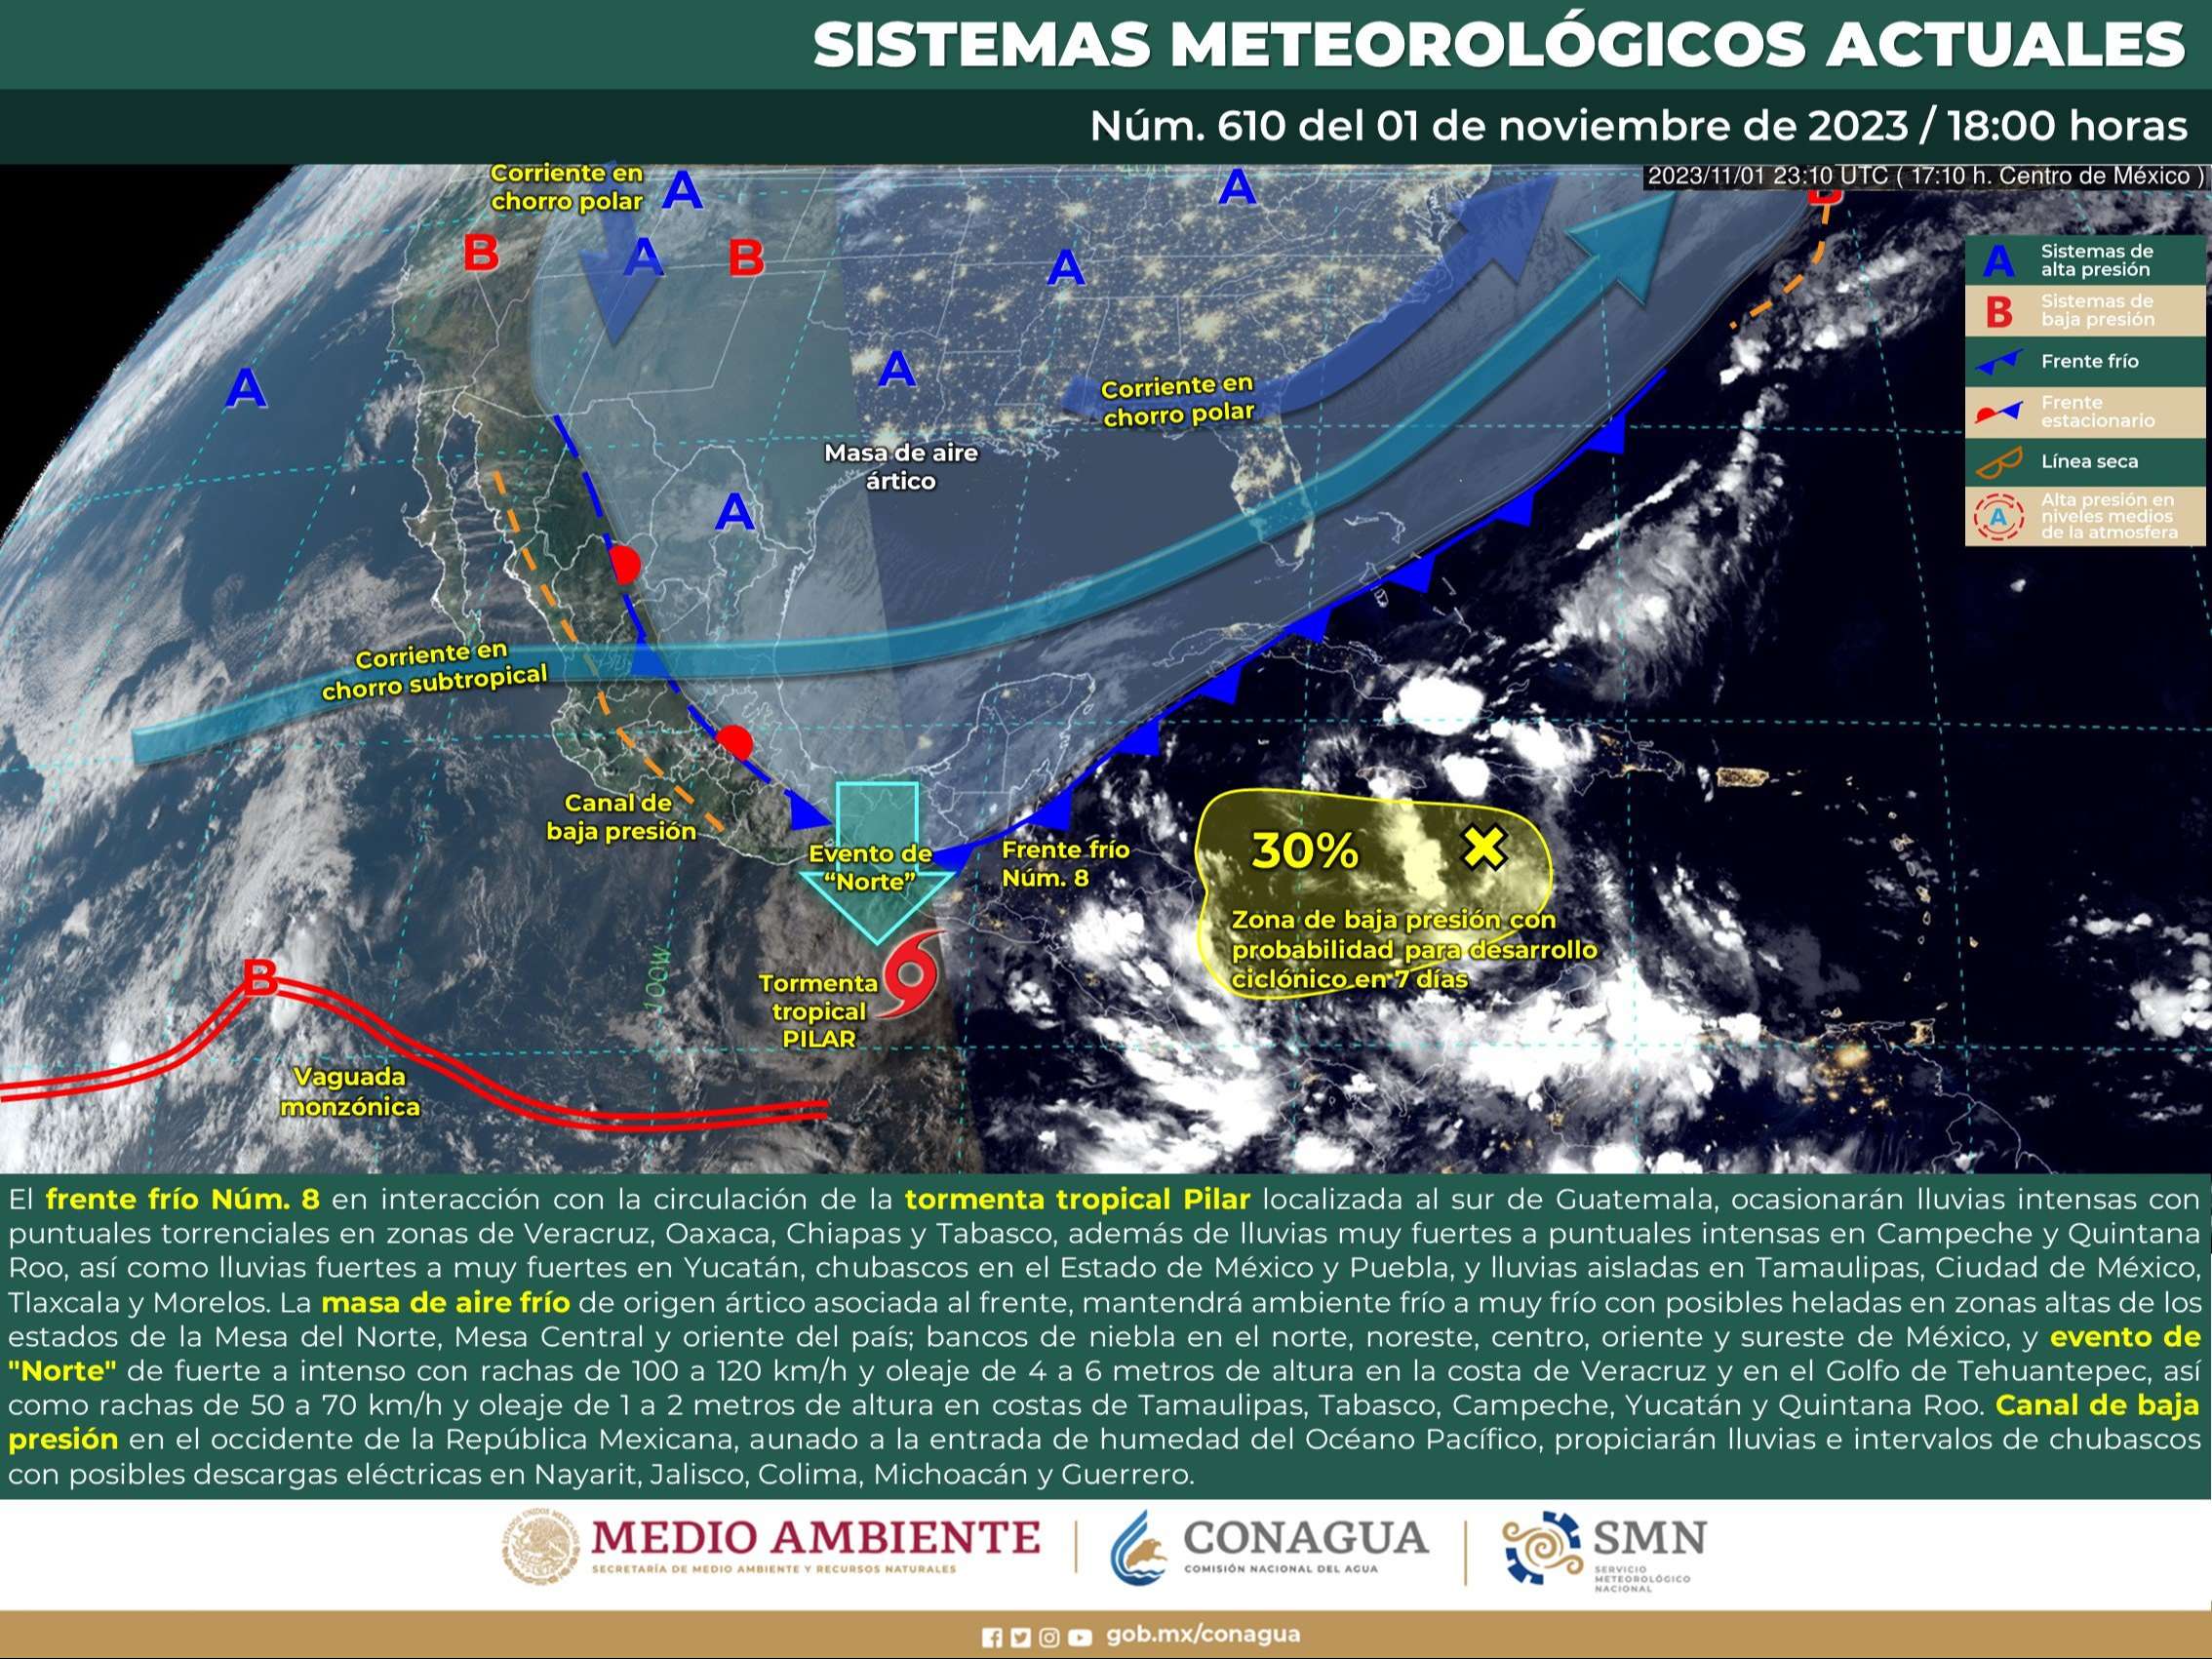 Tormenta tropical "Pilar" incrementa su velocidad hacia el Pacífico